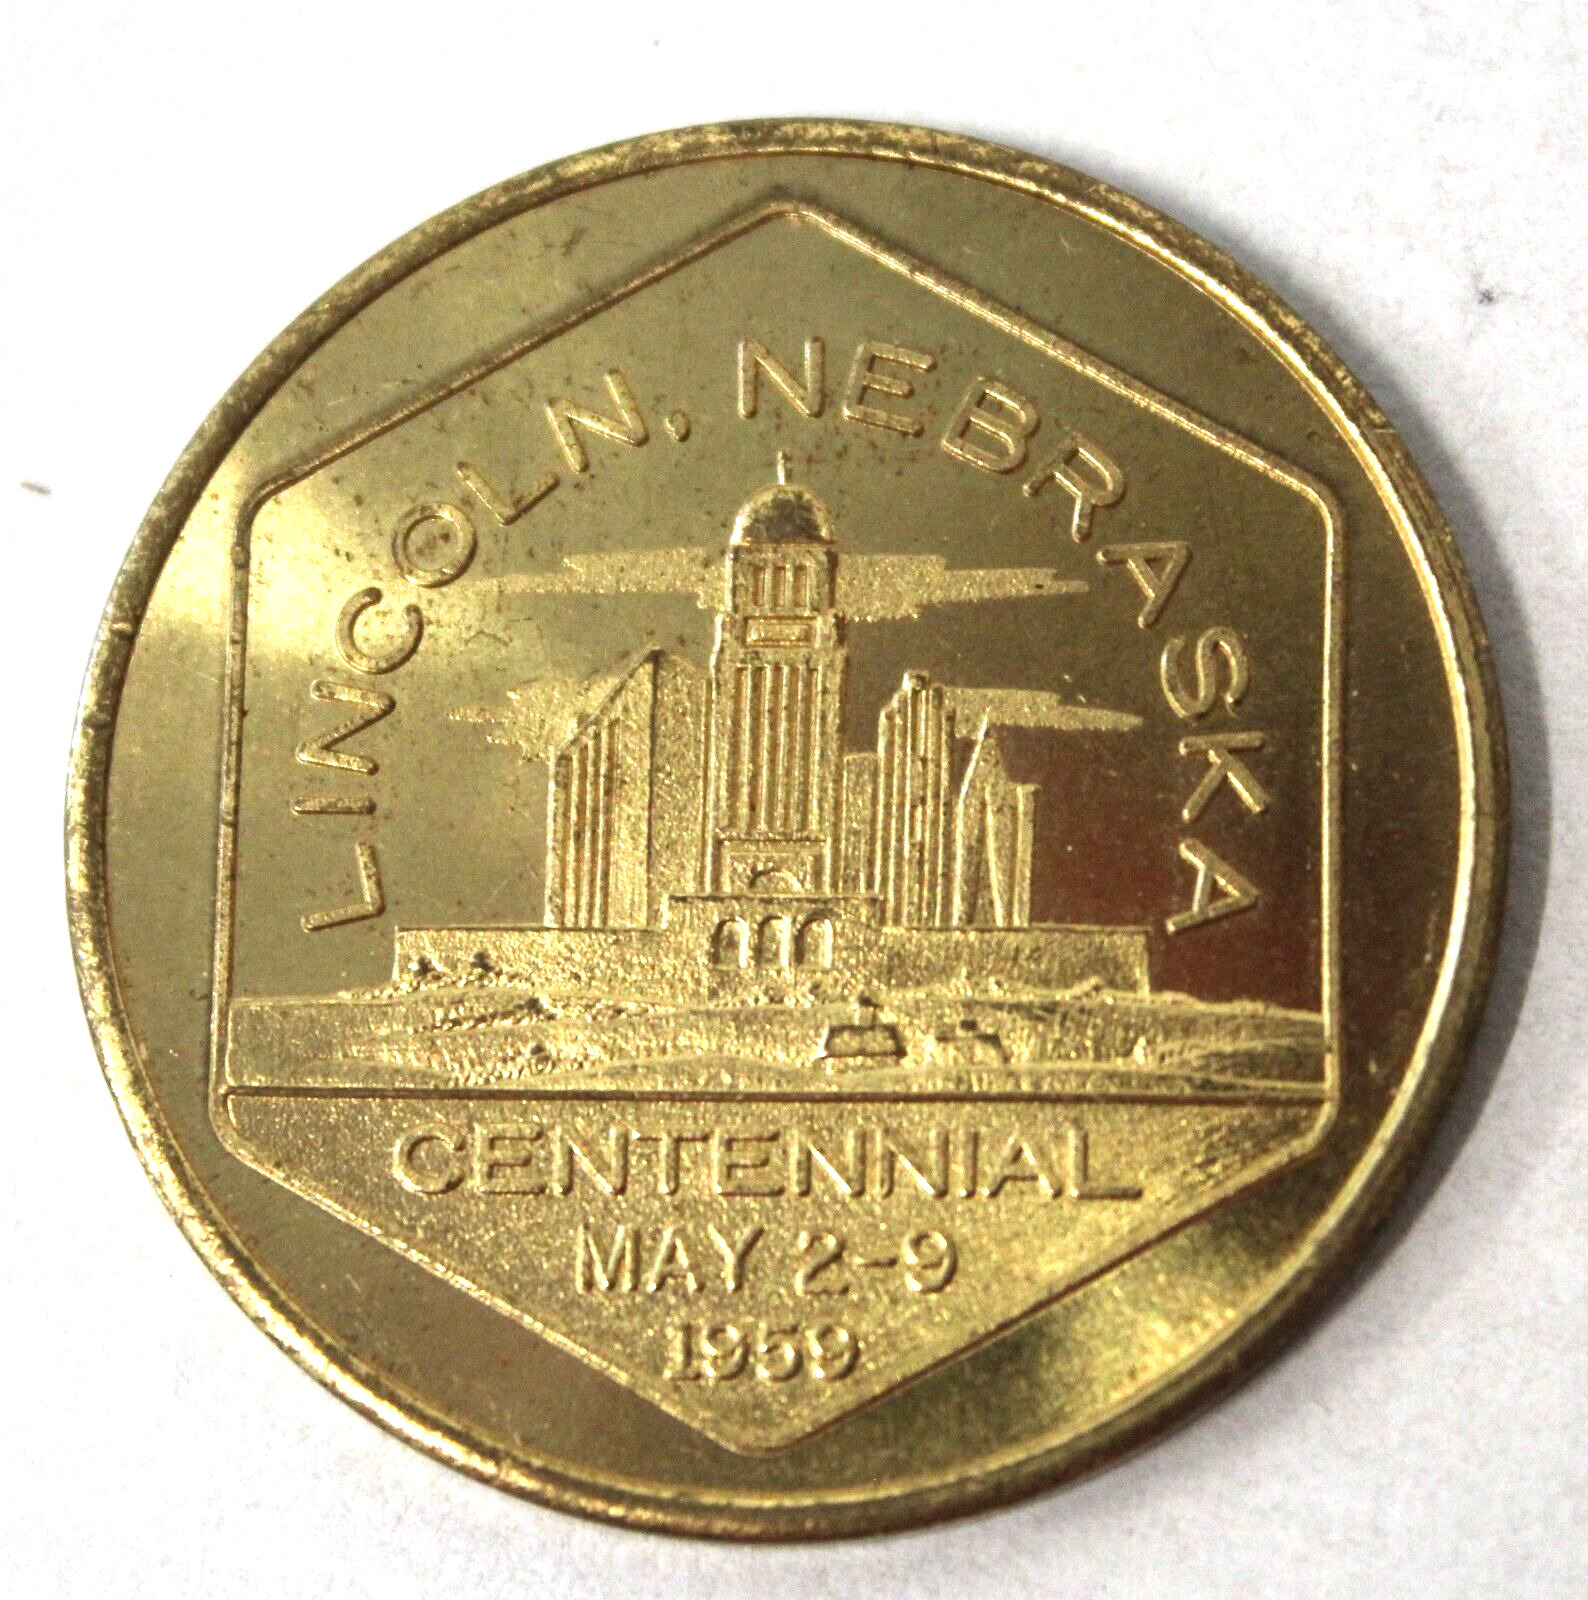 Vintage 1959 Lincoln Nebraska, Centennial Souvenir Coin - 50 cent Trade Token